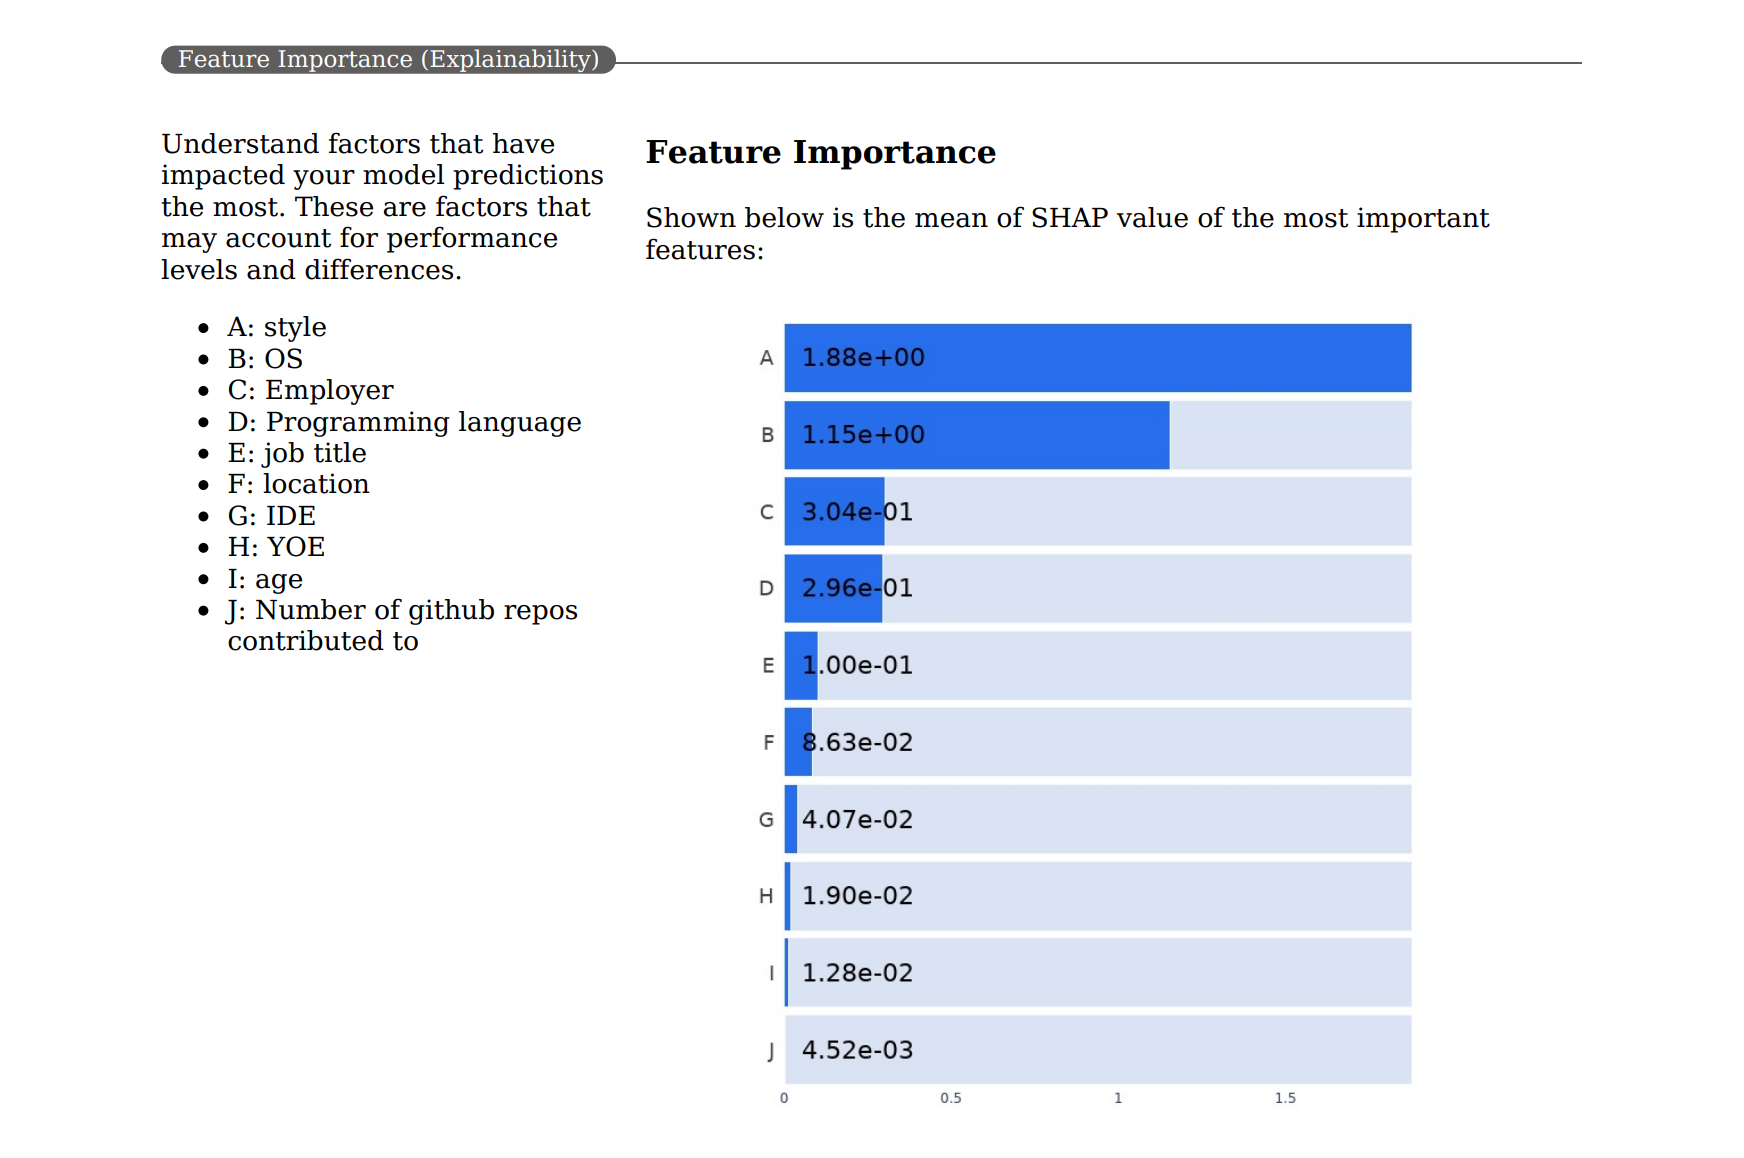 Снимок экрана: самые важные факторы в PDF-файле системы показателей ответственного применения ИИ.